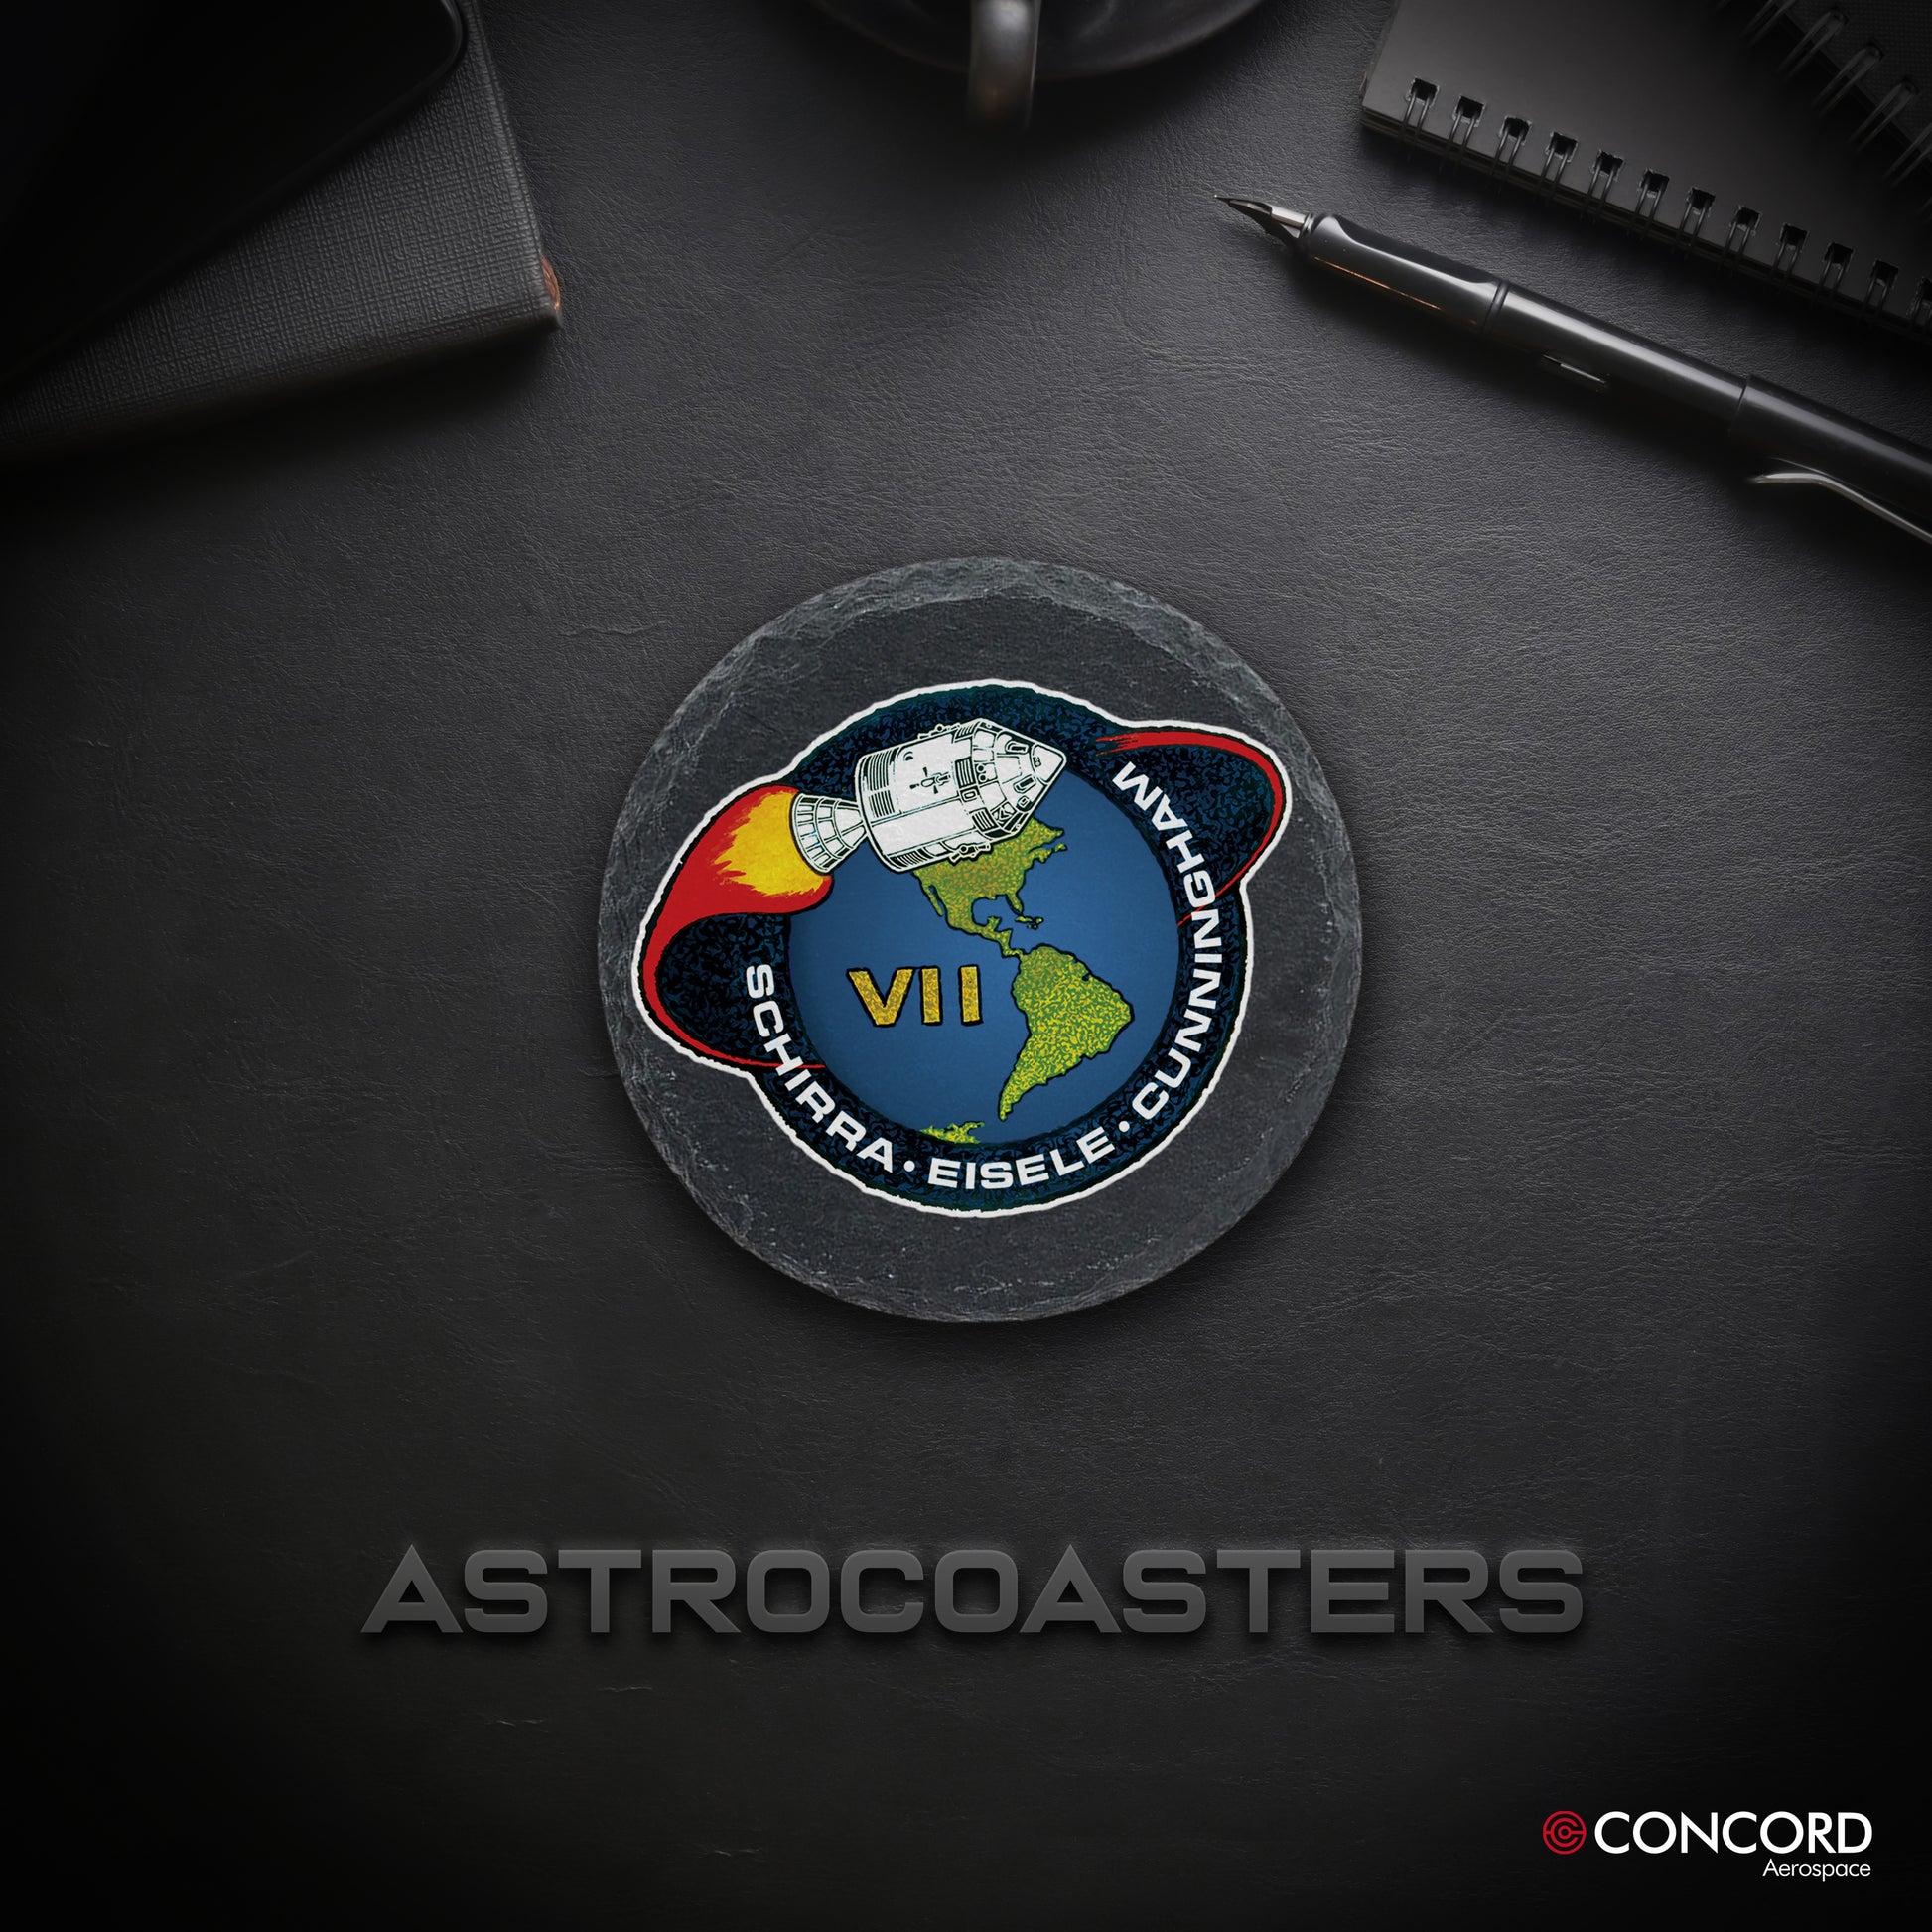 APOLLO 7 MISSION - SLATE COASTER - Concord Aerospace Concord Aerospace Concord Aerospace Coasters